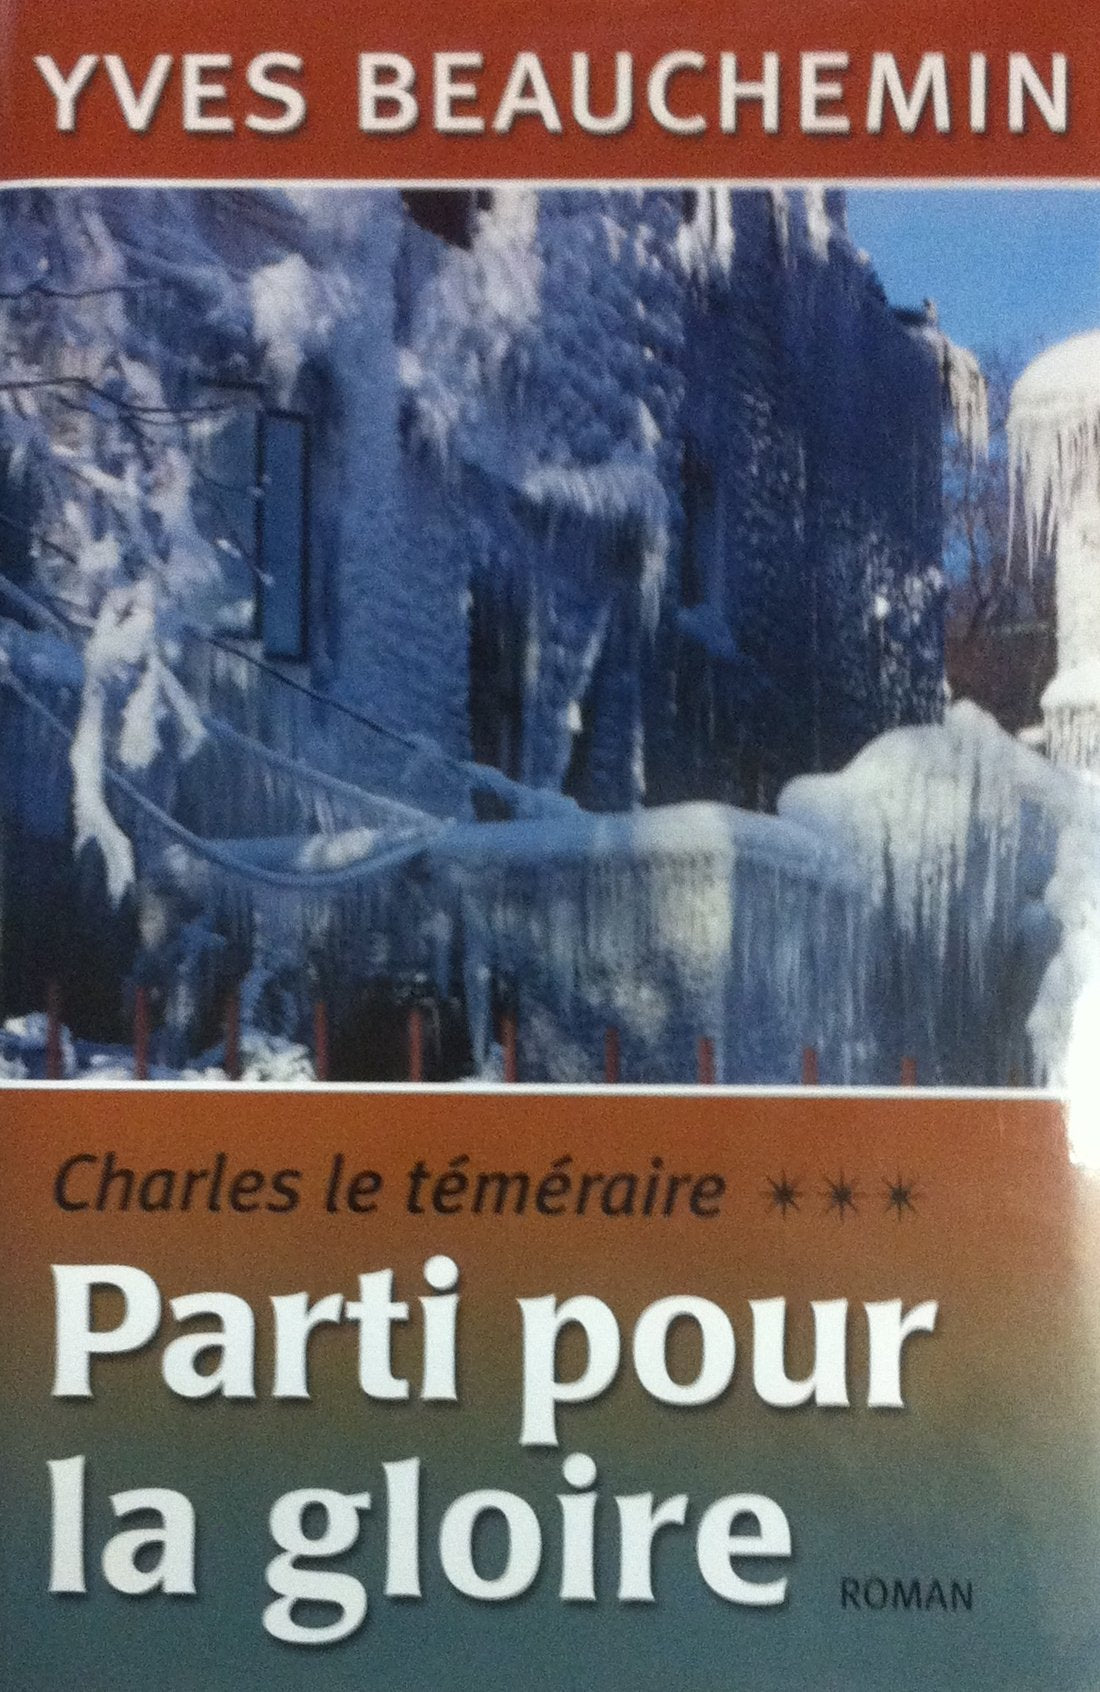 Livre ISBN 2894307624 Charles le téméraire # 3 : Parti pour la gloire (Yves Beauchemin)